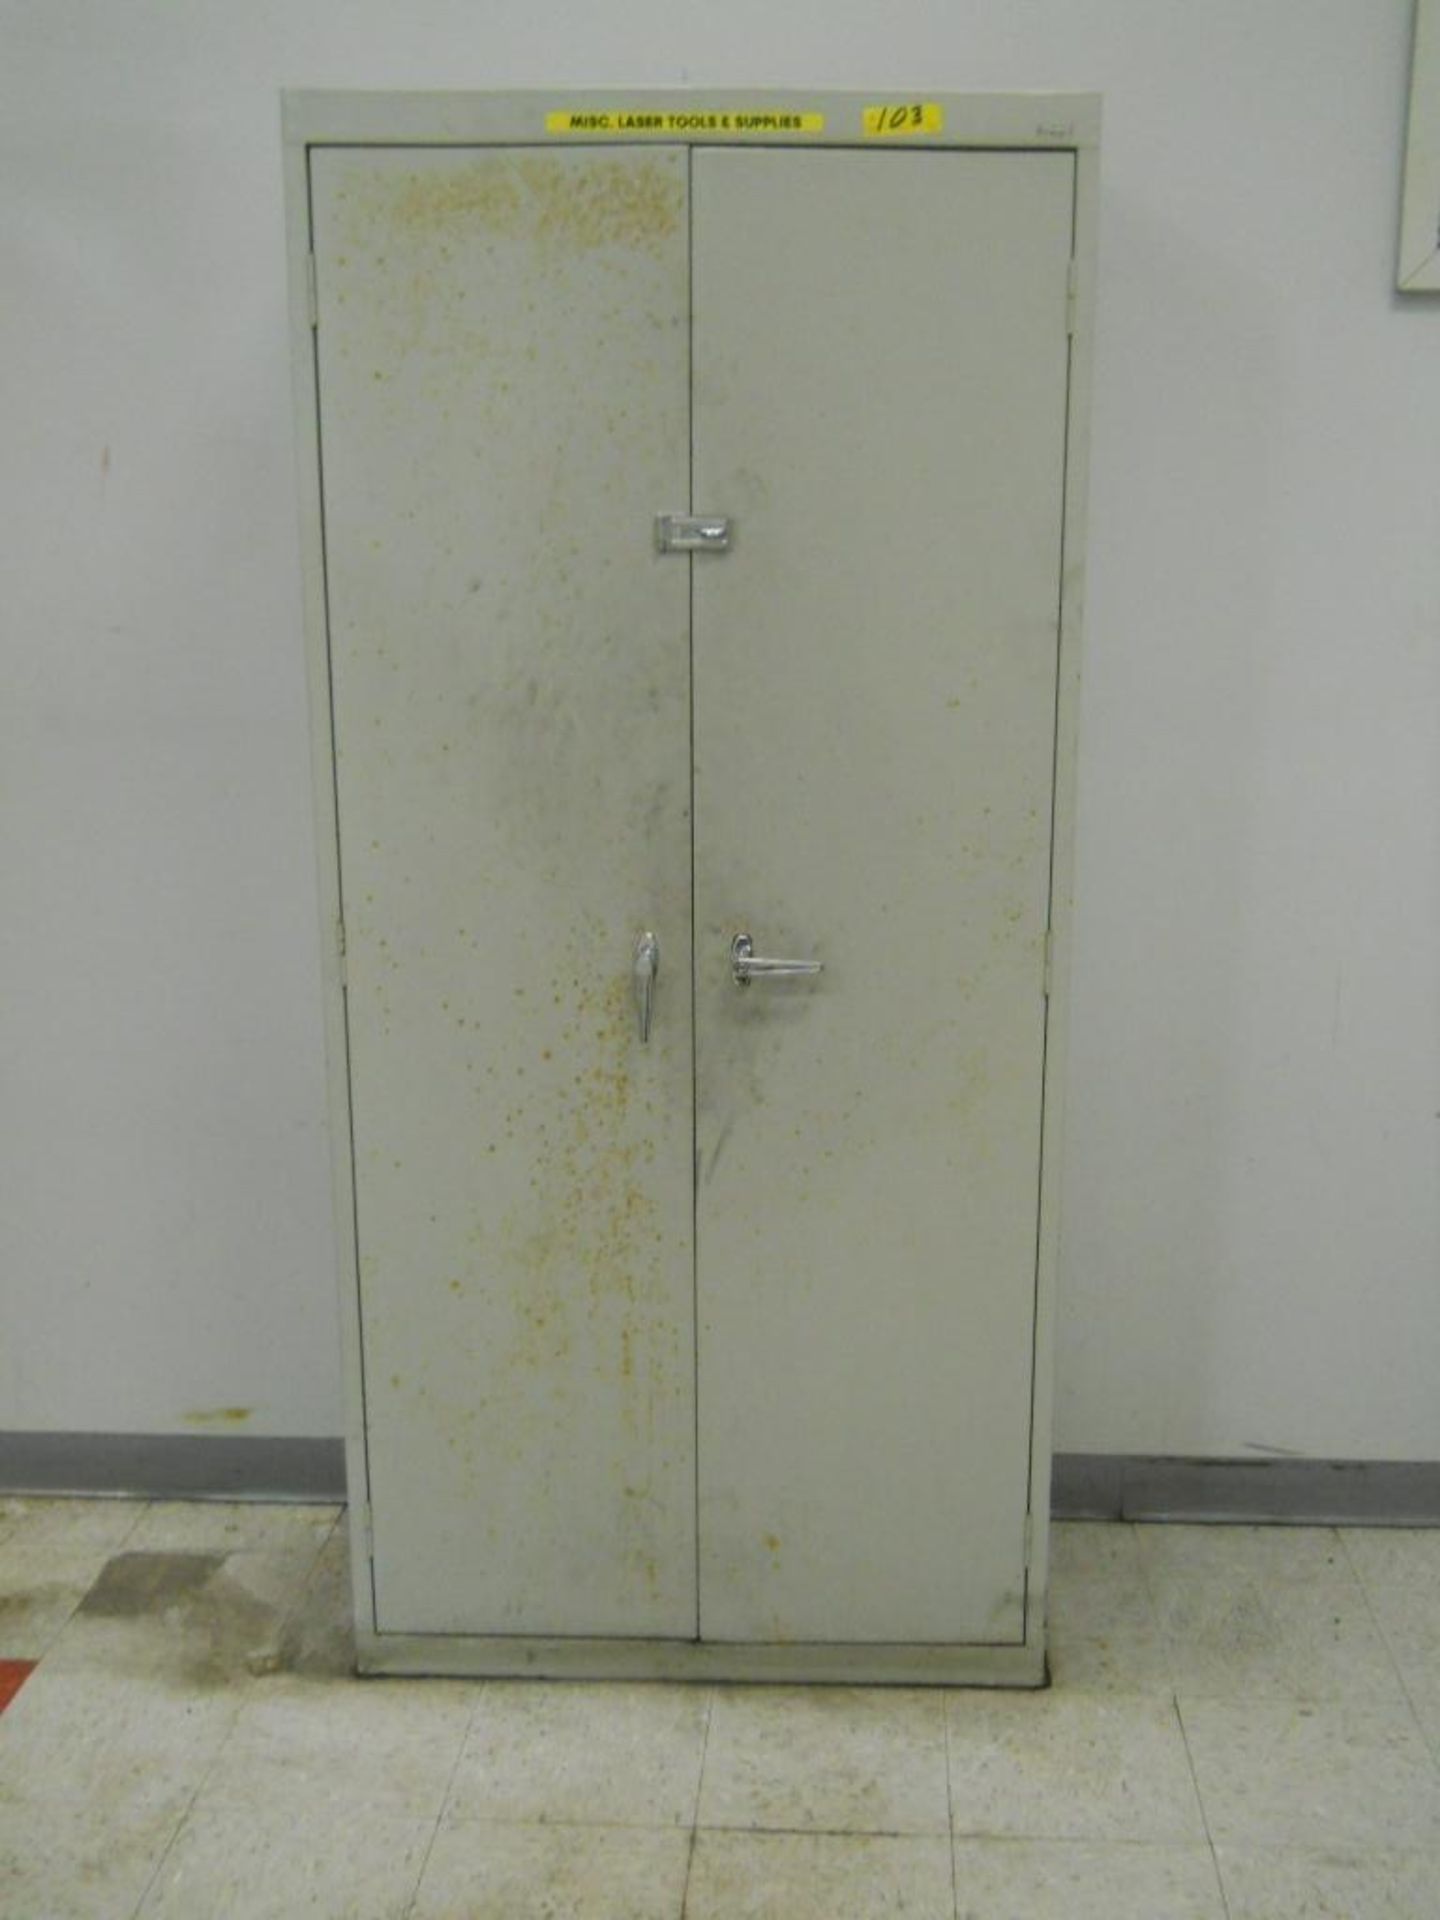 LOT OF: (1) 2-DOOR HEAVY DUTY METAL CABINET, (1) WOOD TOPPED STEEL WORK BENCH, (1) 2-DOOR 6-DRAWER - Image 5 of 5